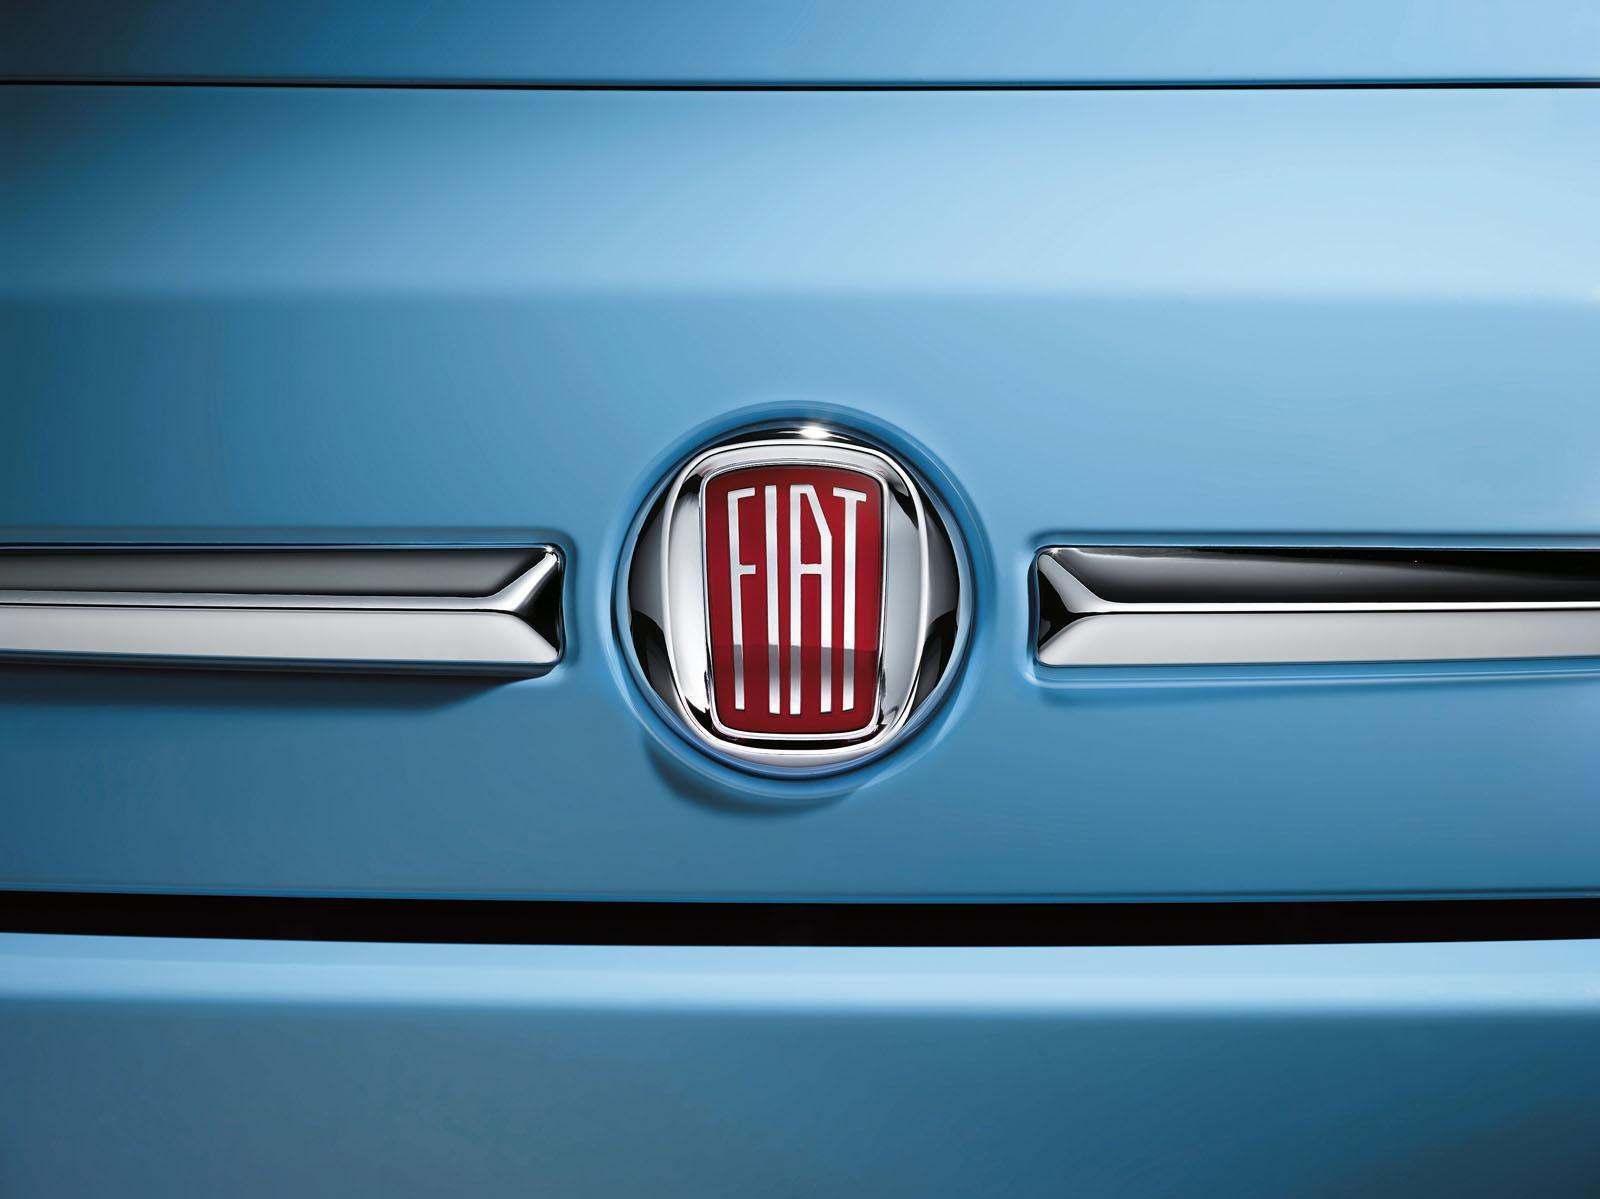 La Fiat 500 fait son entrée au musée d' art moderne de N.Y - Le Mag Auto  Prestige